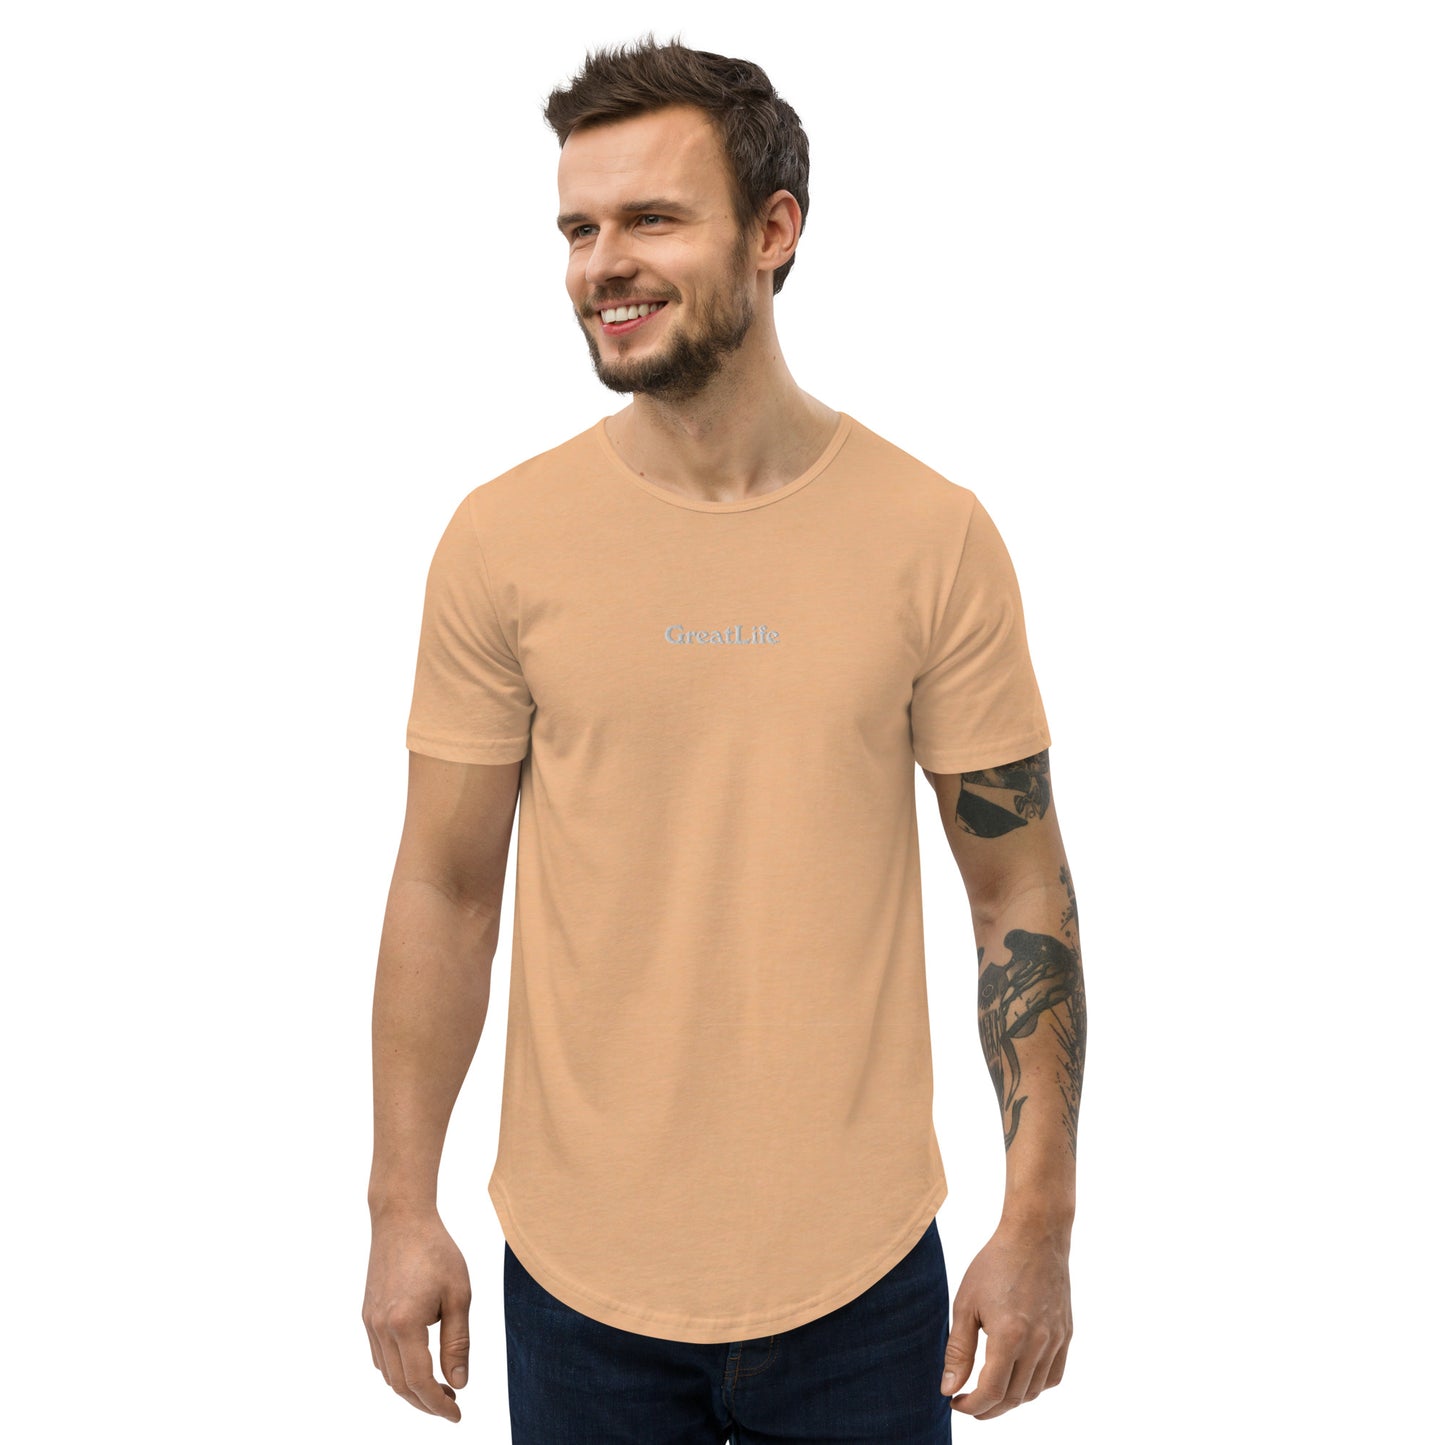 Super Cool GreatLife Men's Curved Hem T-Shirt